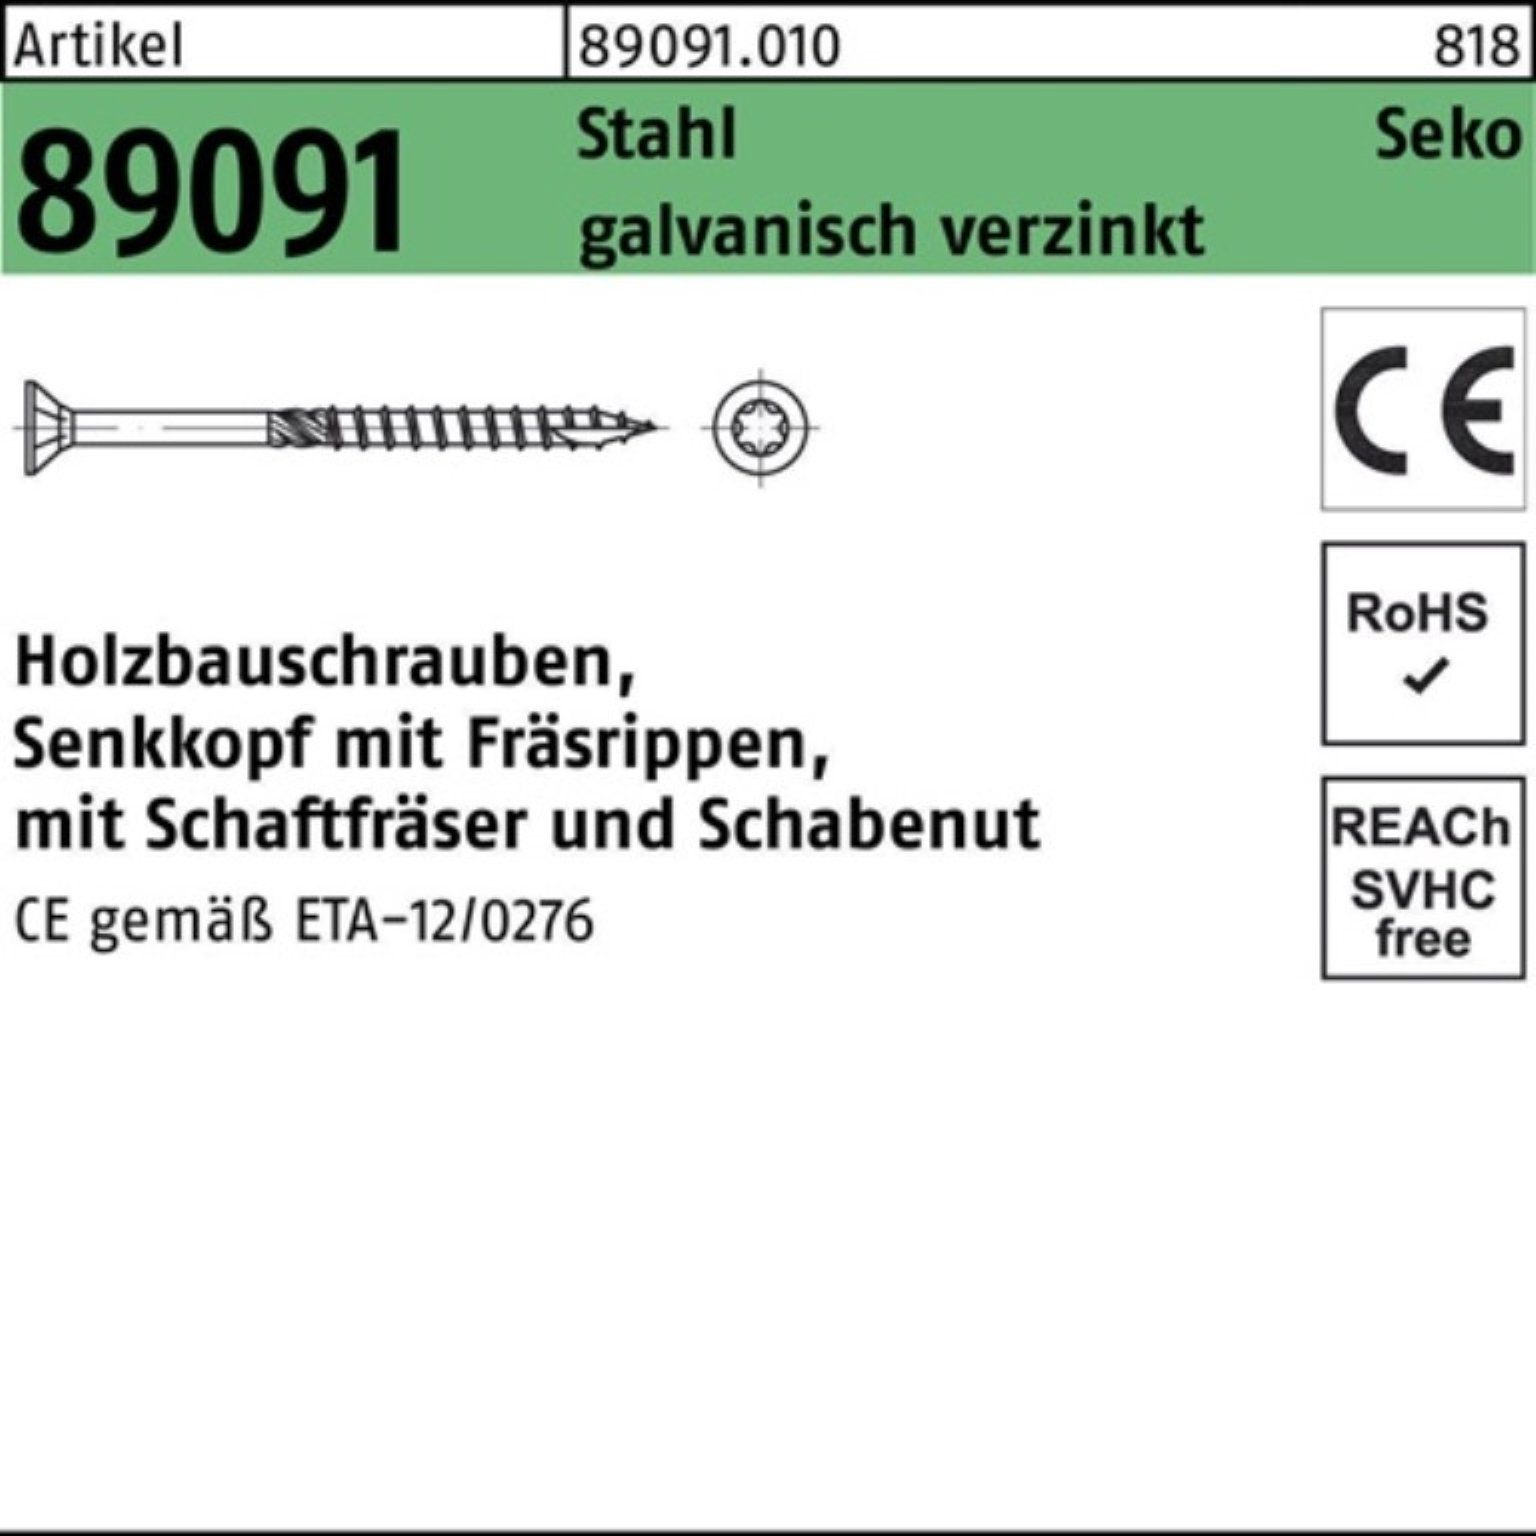 SEKO Pack 10x260-T40 100er ISR galv.verz Holzbauschraube Holzbauschraube Stahl 89091 Reyher R